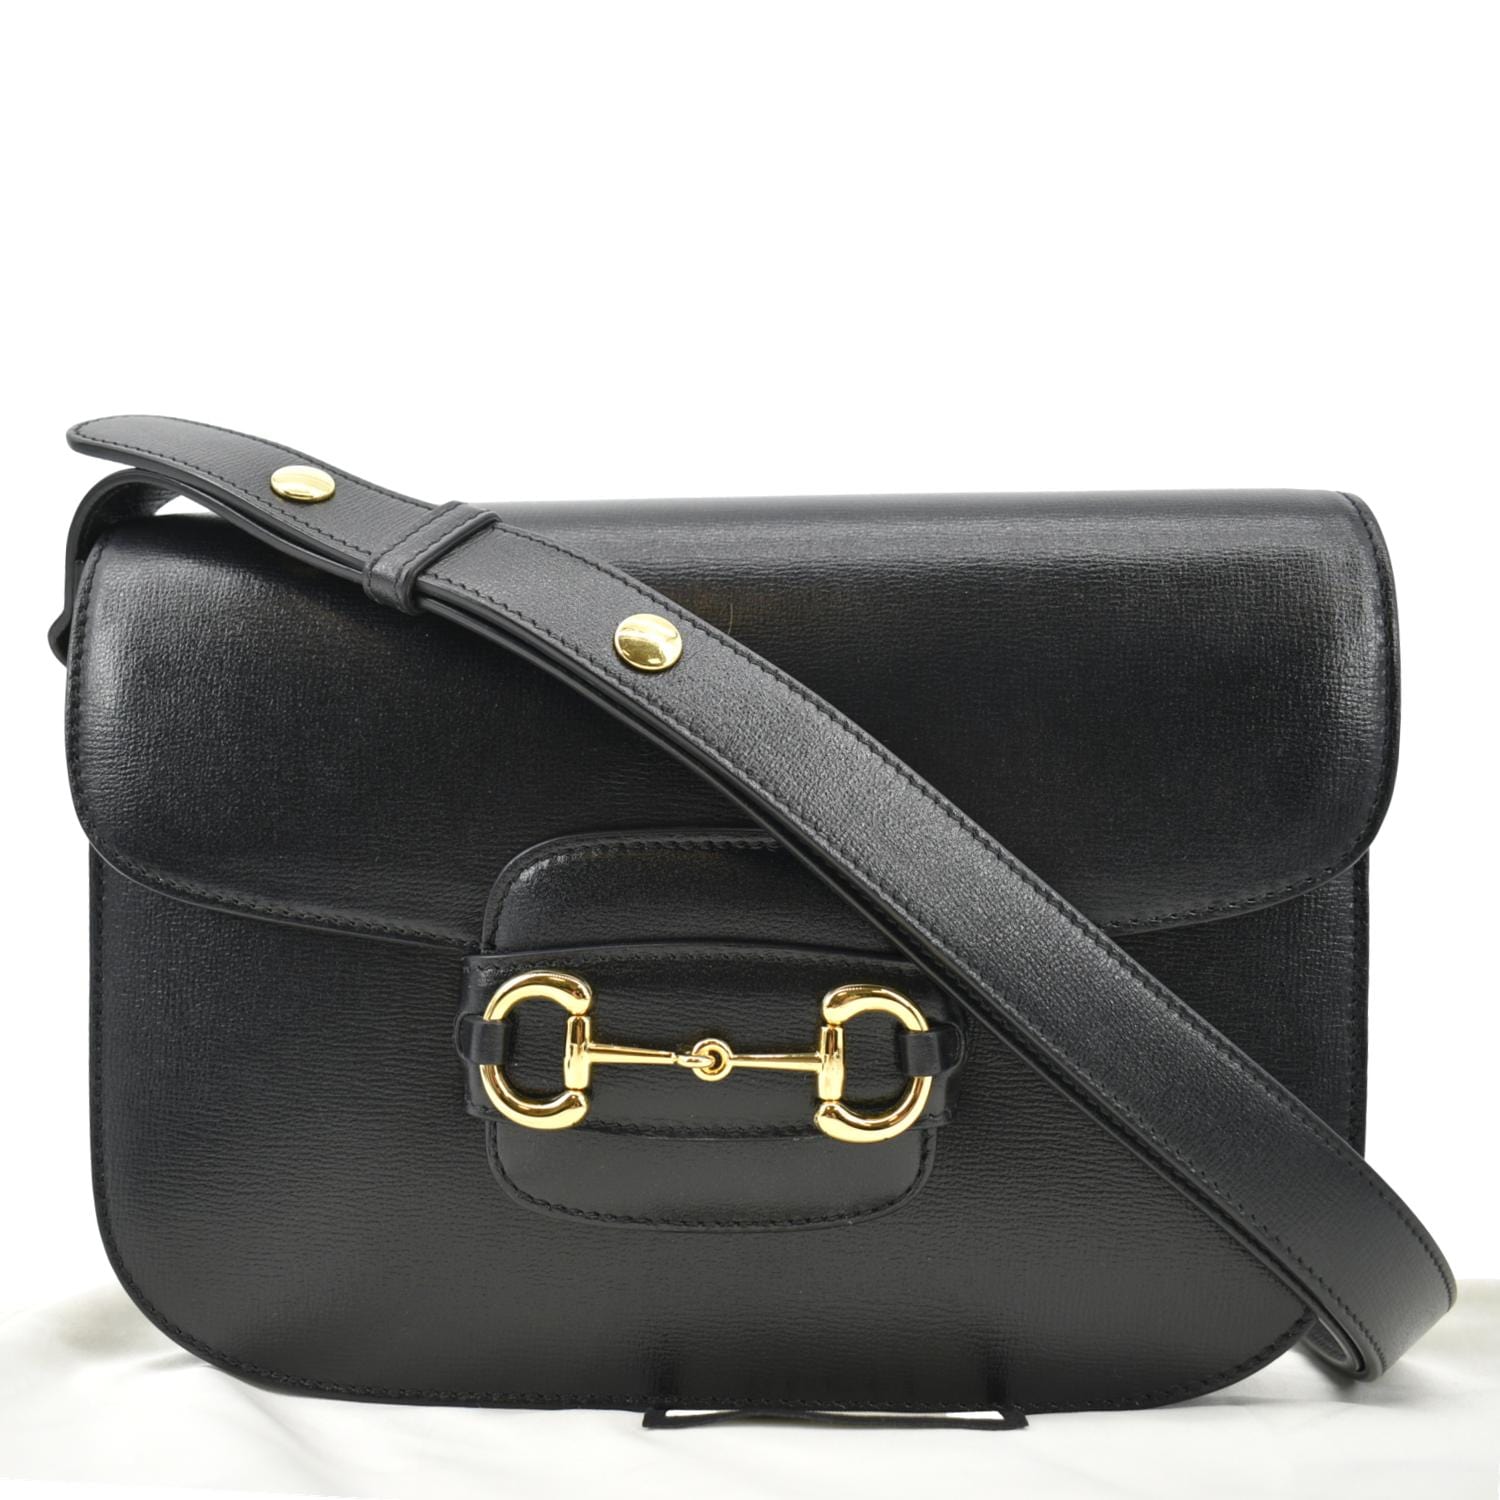 Black Gucci Horsebit 1955 Mini Bag 